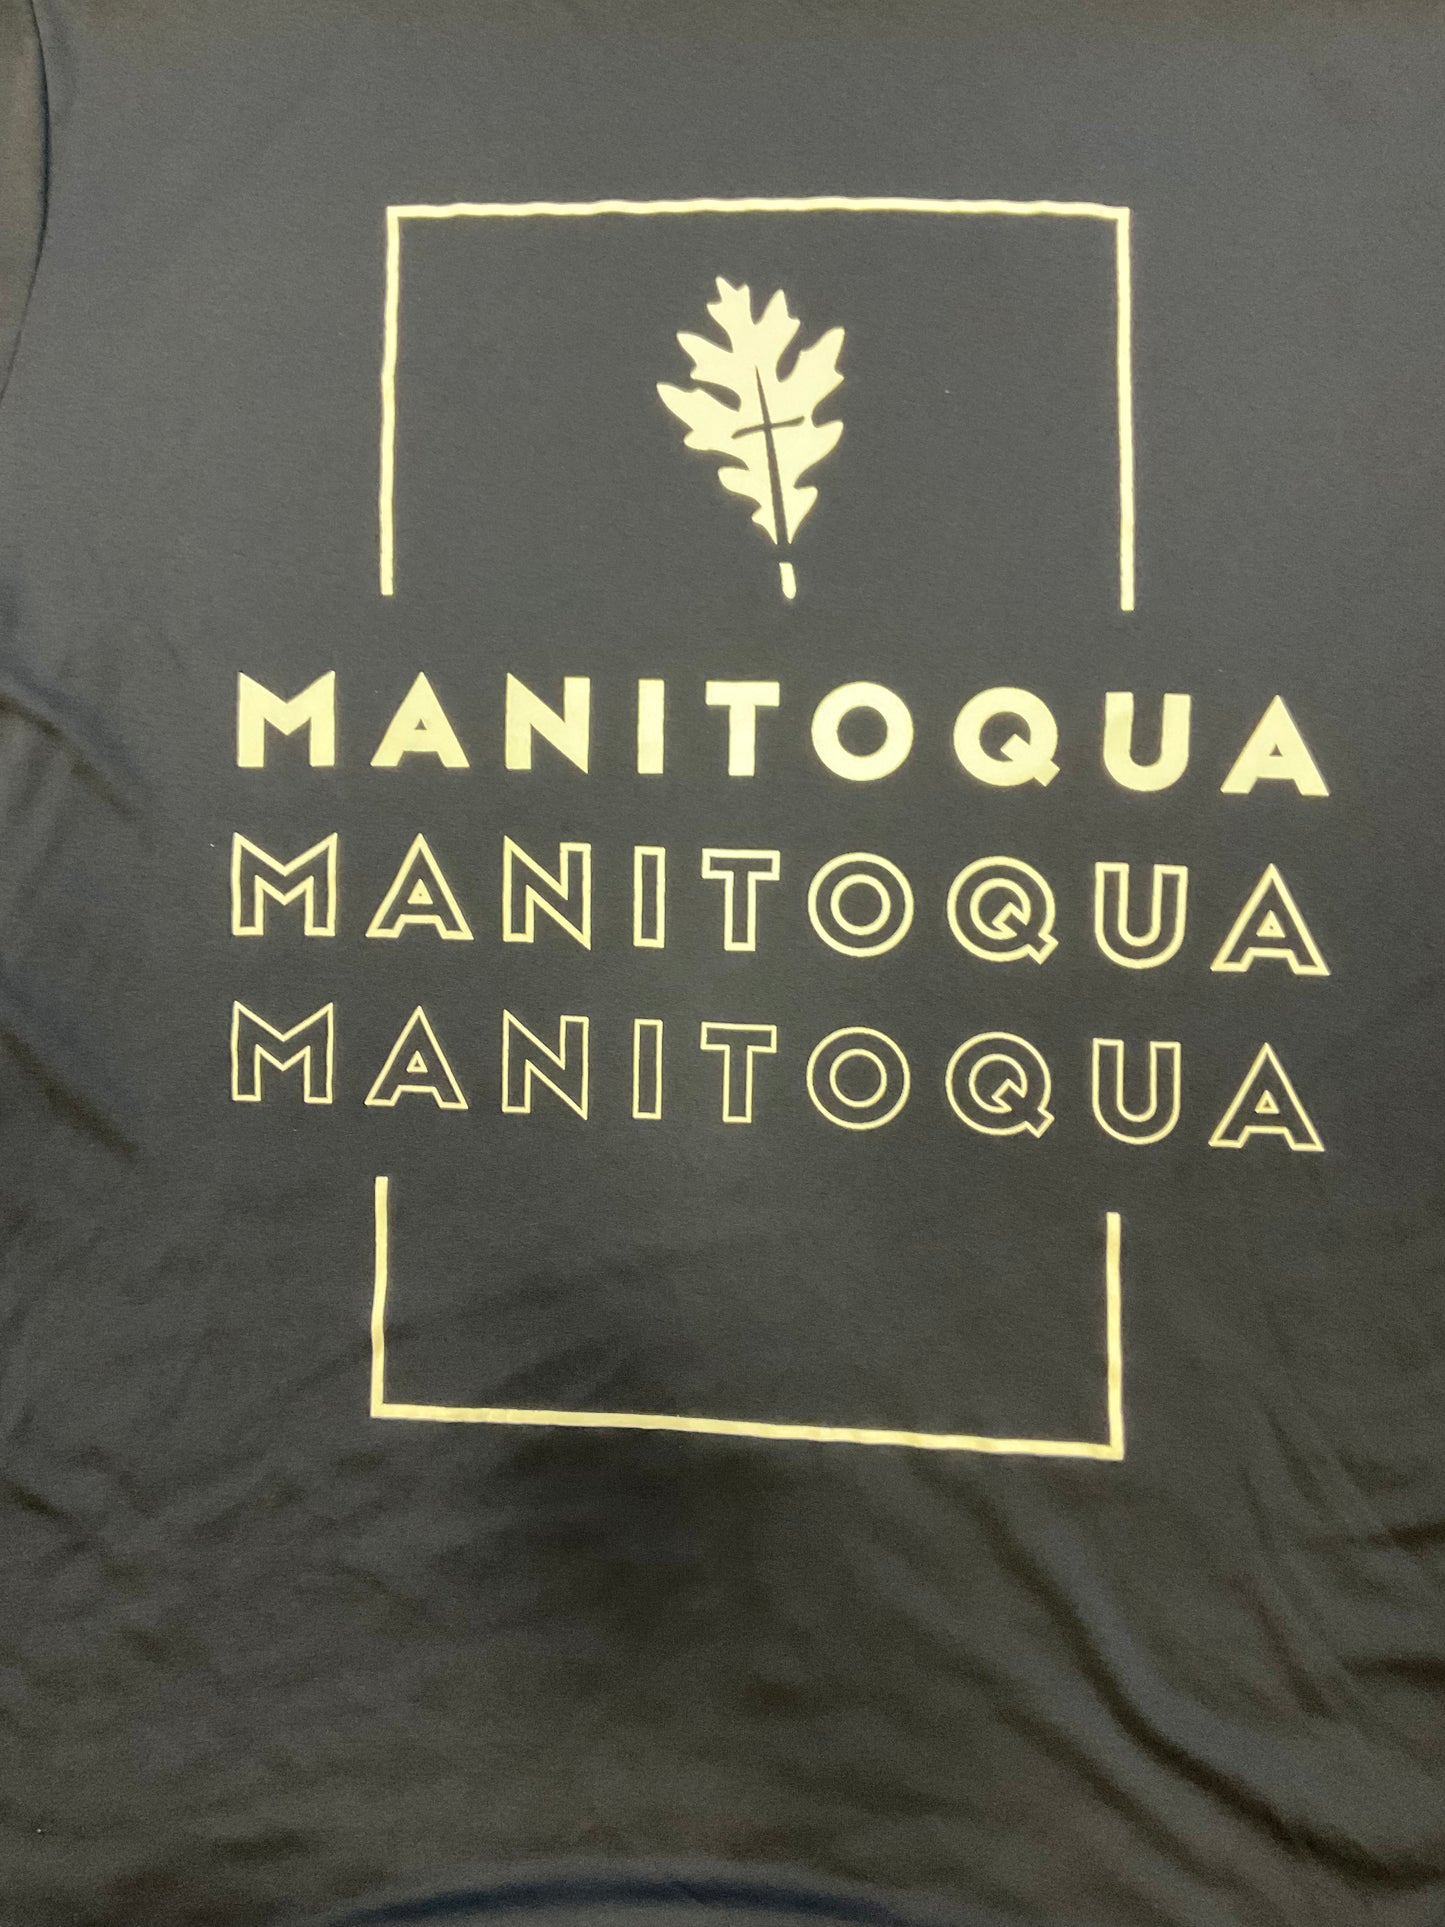 Manitoqua x3 sports t-shirt